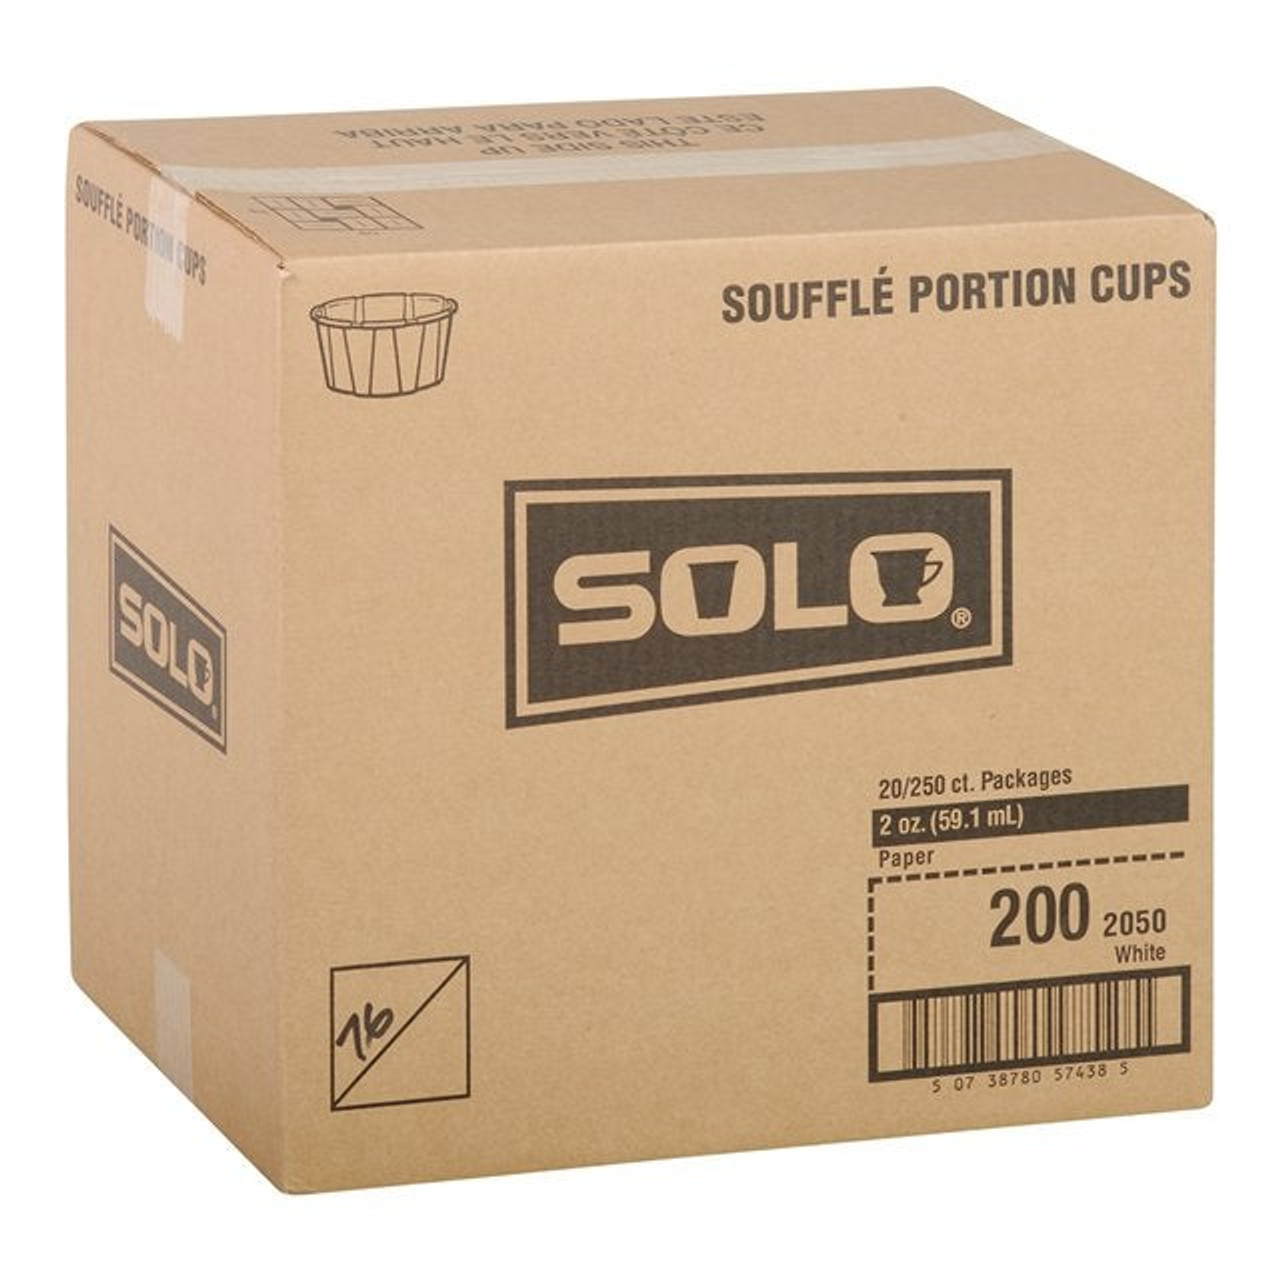 Solo 2oz White Paper Portion Cups | 250UN/Unit, 20 Units/Case